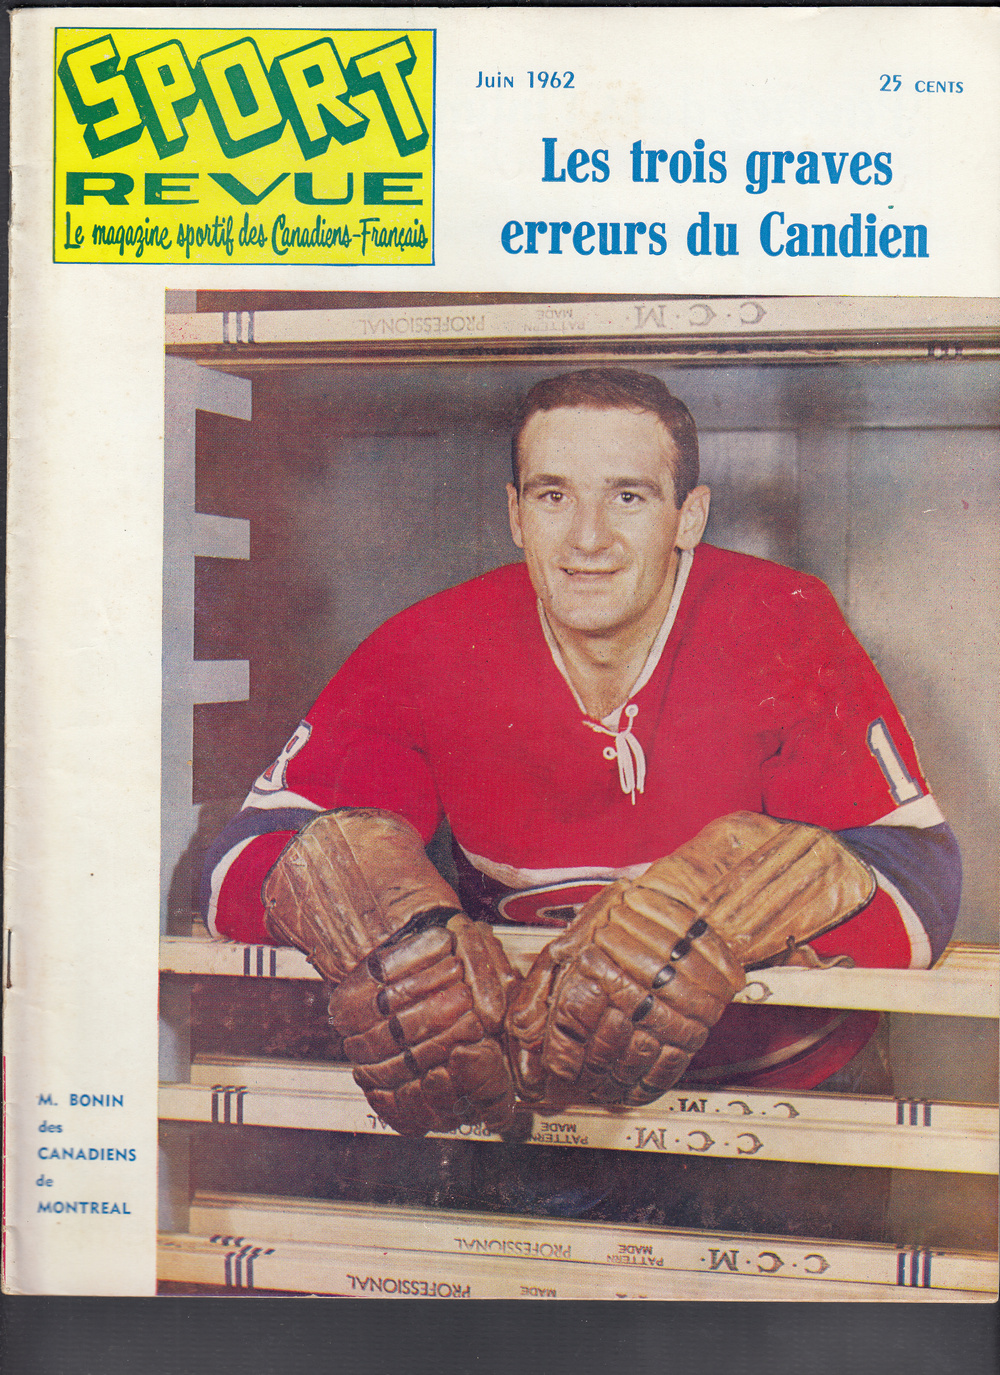 1962 SPORT REVUE MAGAZINE M. BONIN ON COVER photo